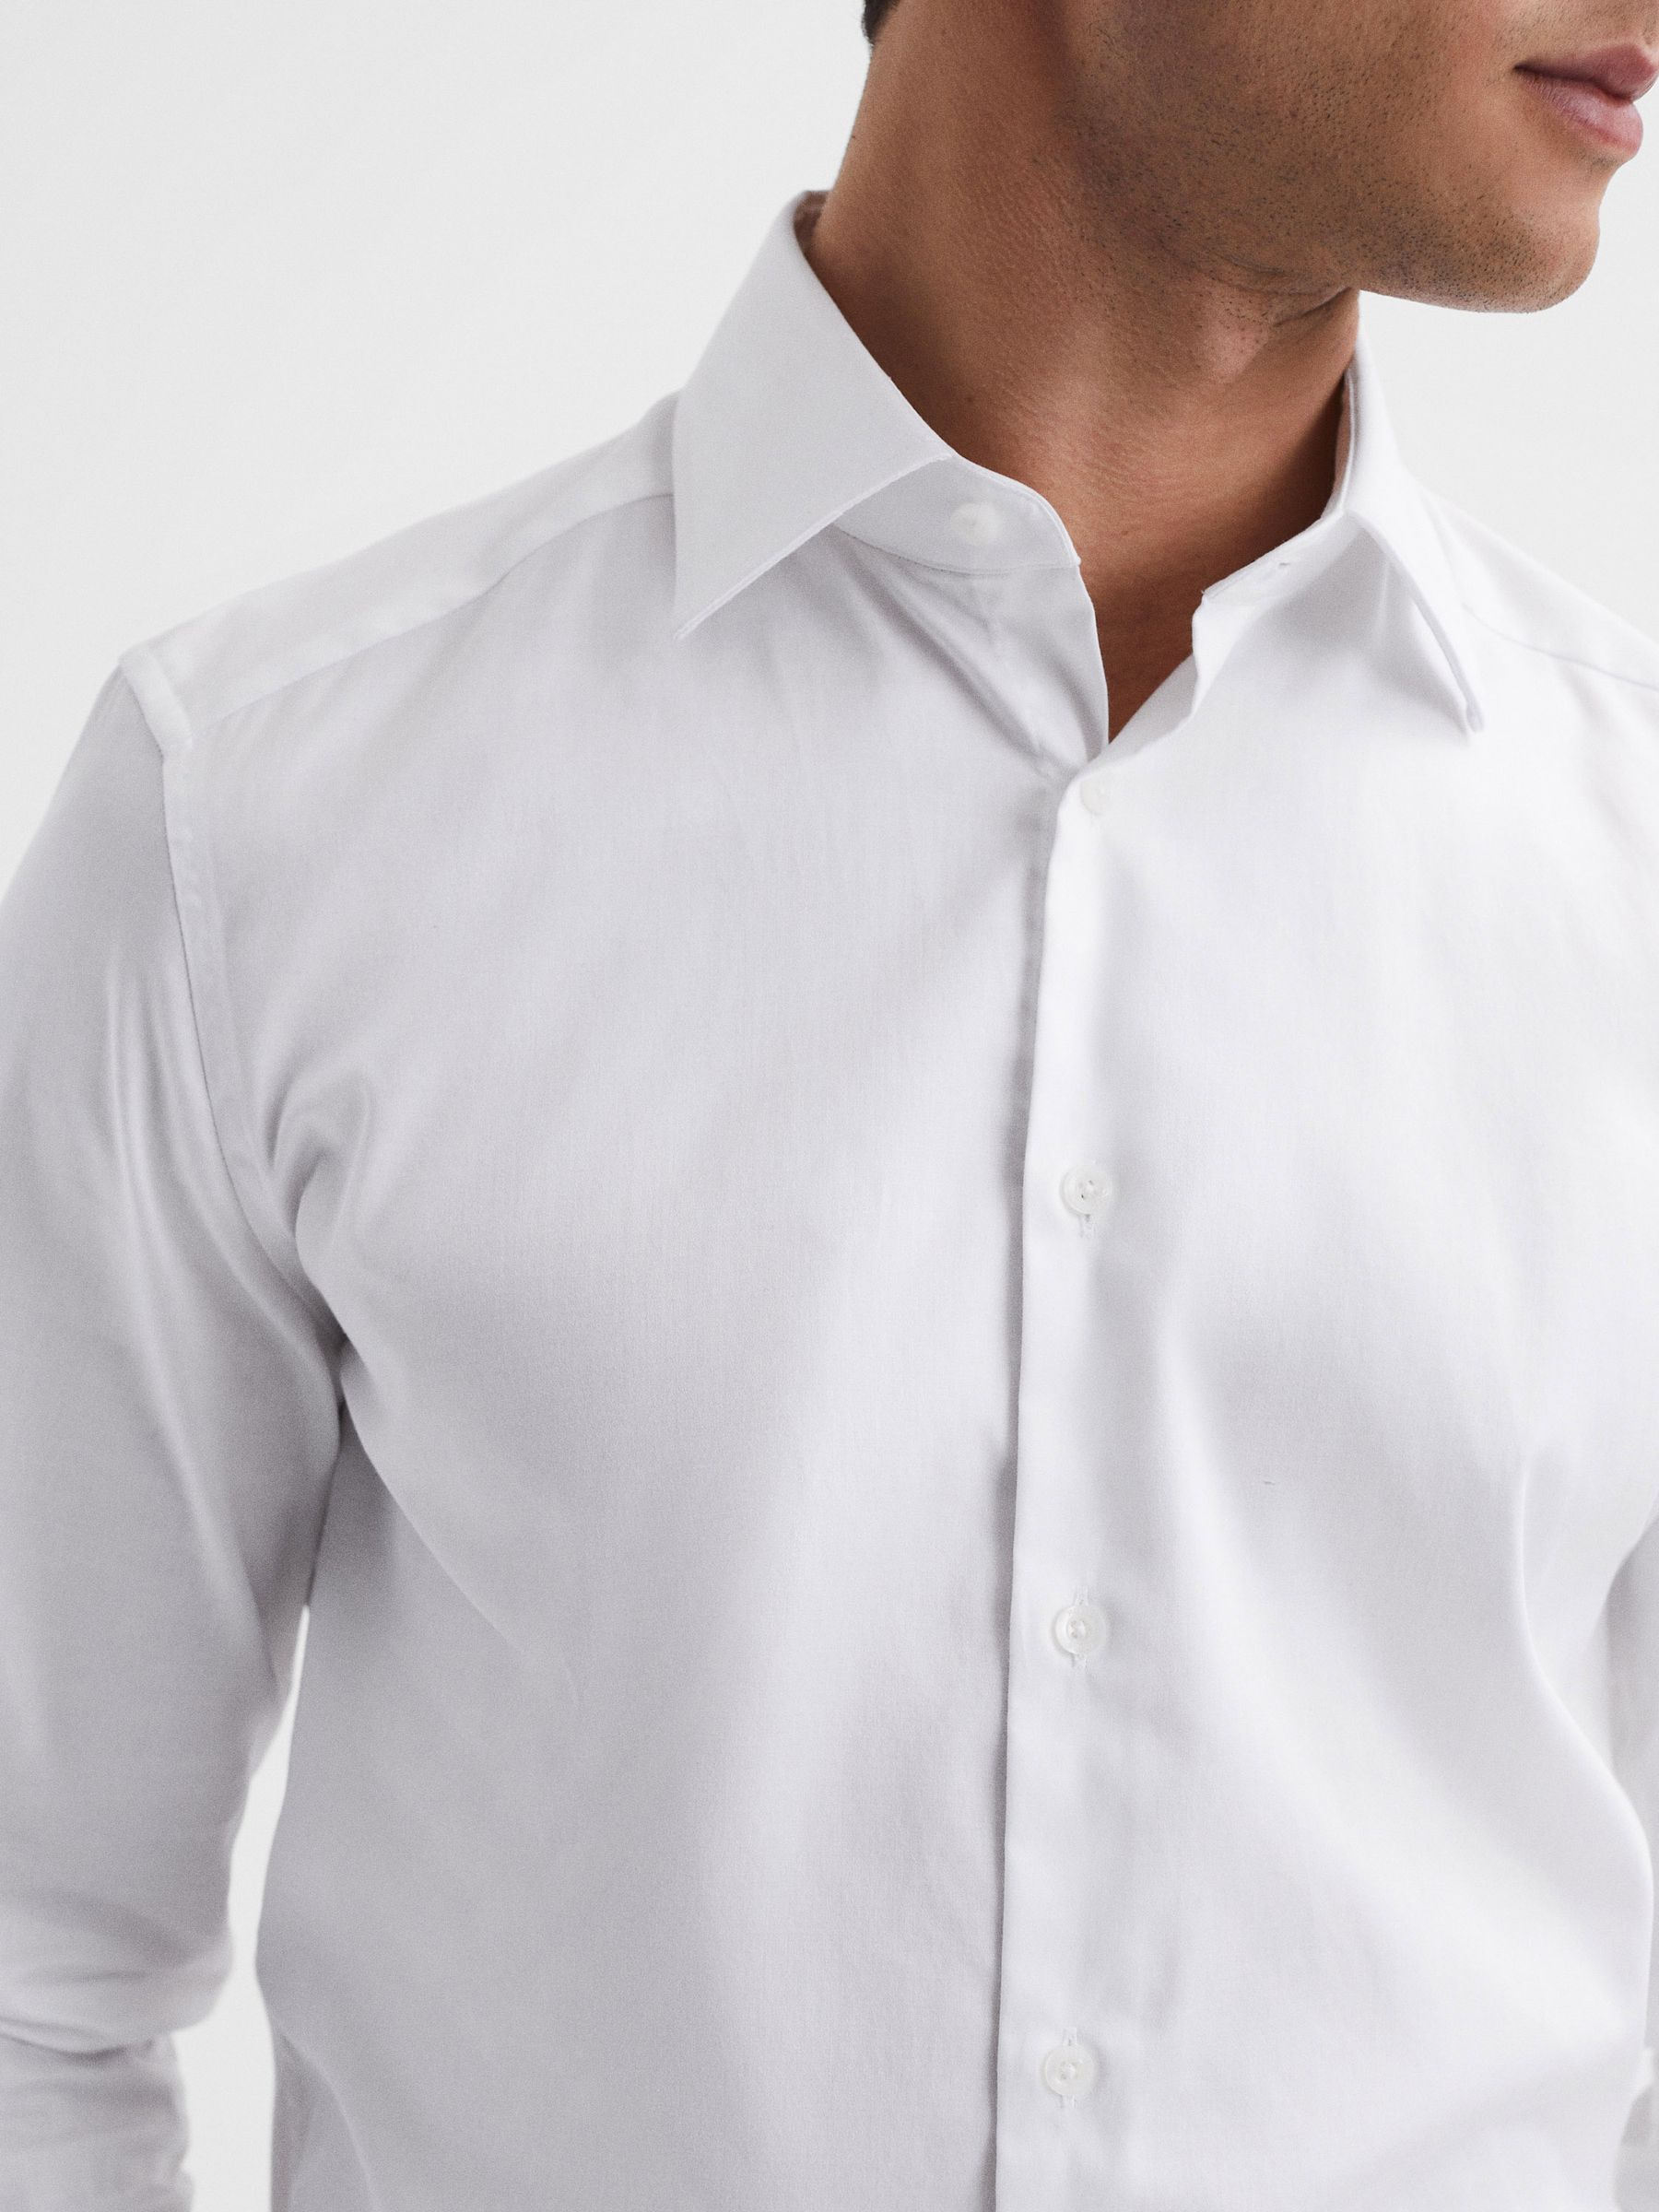 Reiss Frontier Slim Fit Cotton Blend Shirt | REISS USA